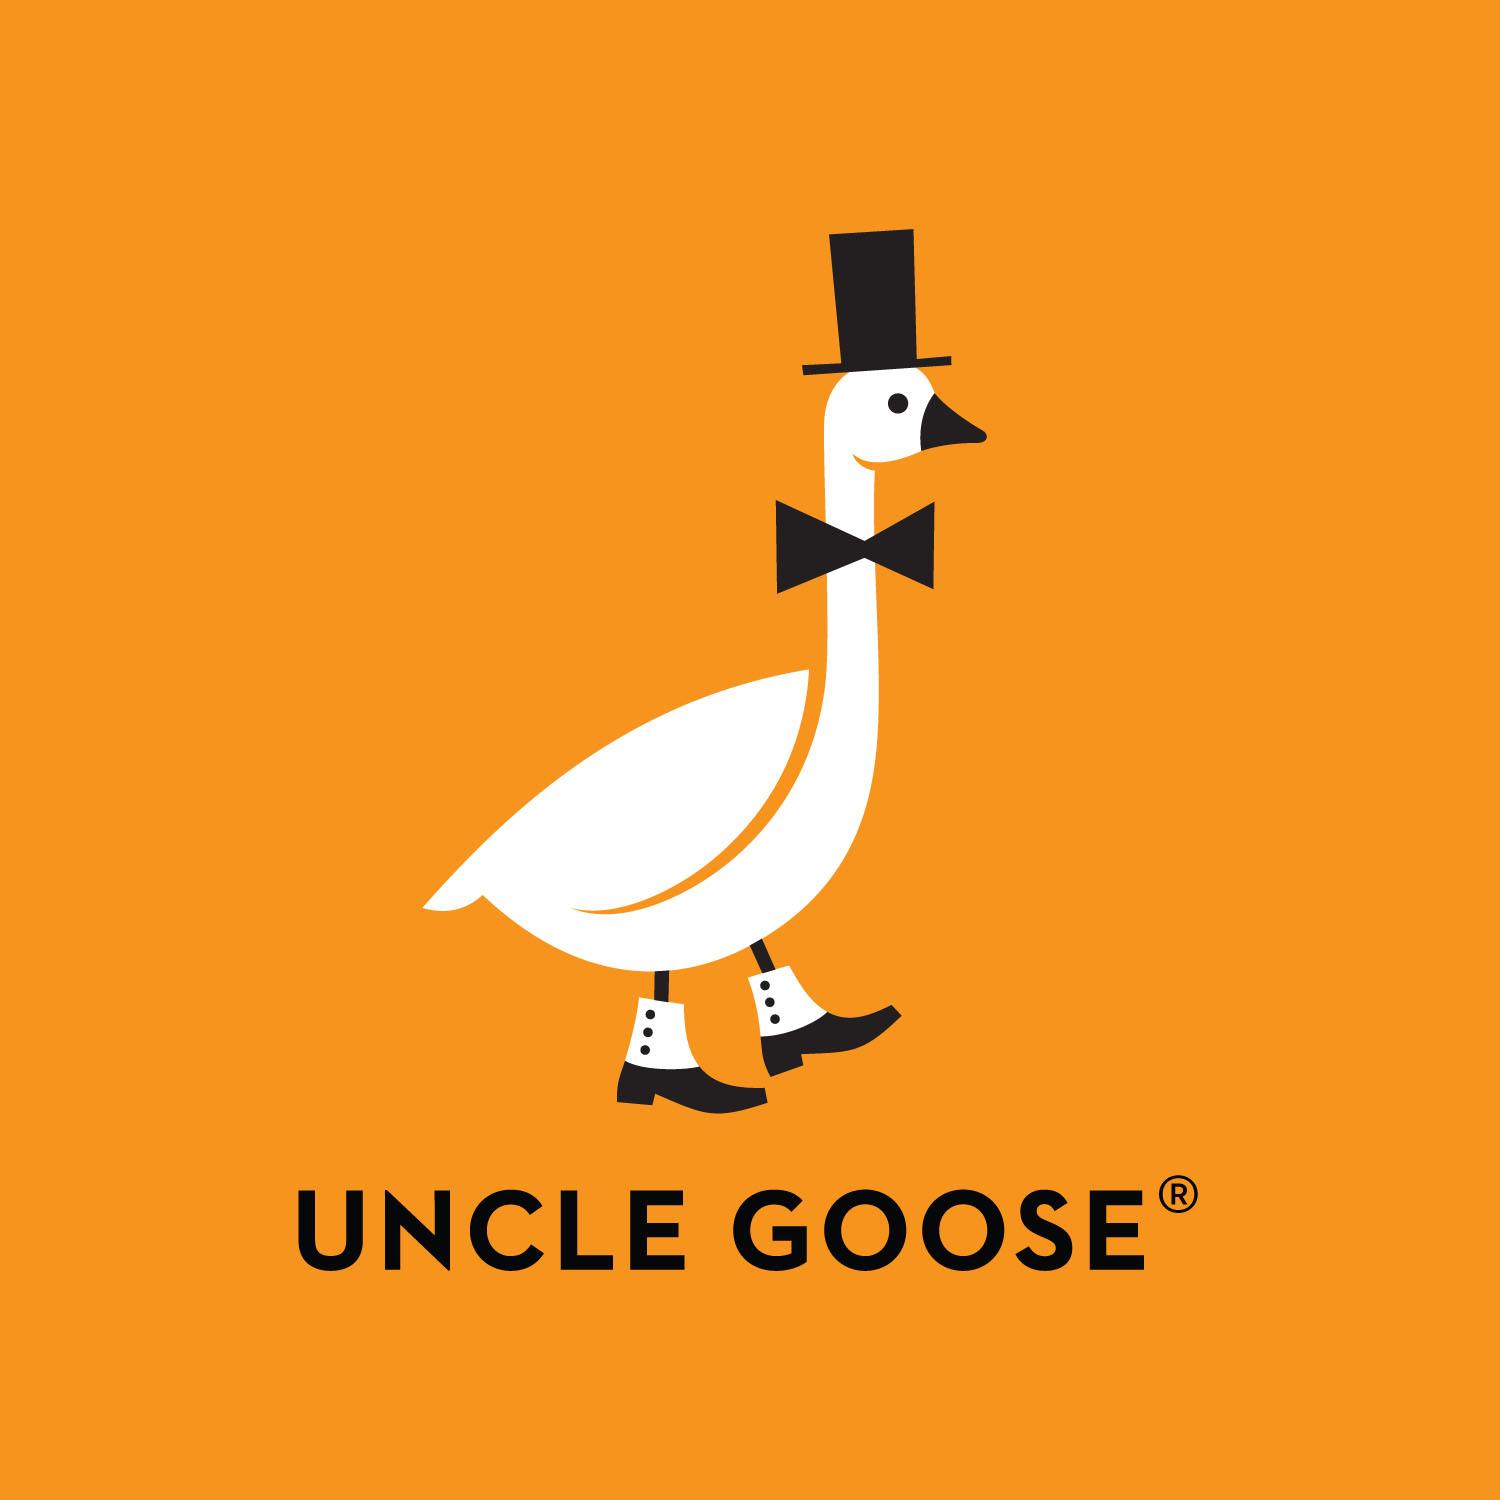 Uncle Goose Heirloom Blocks & Giveaway Fun!